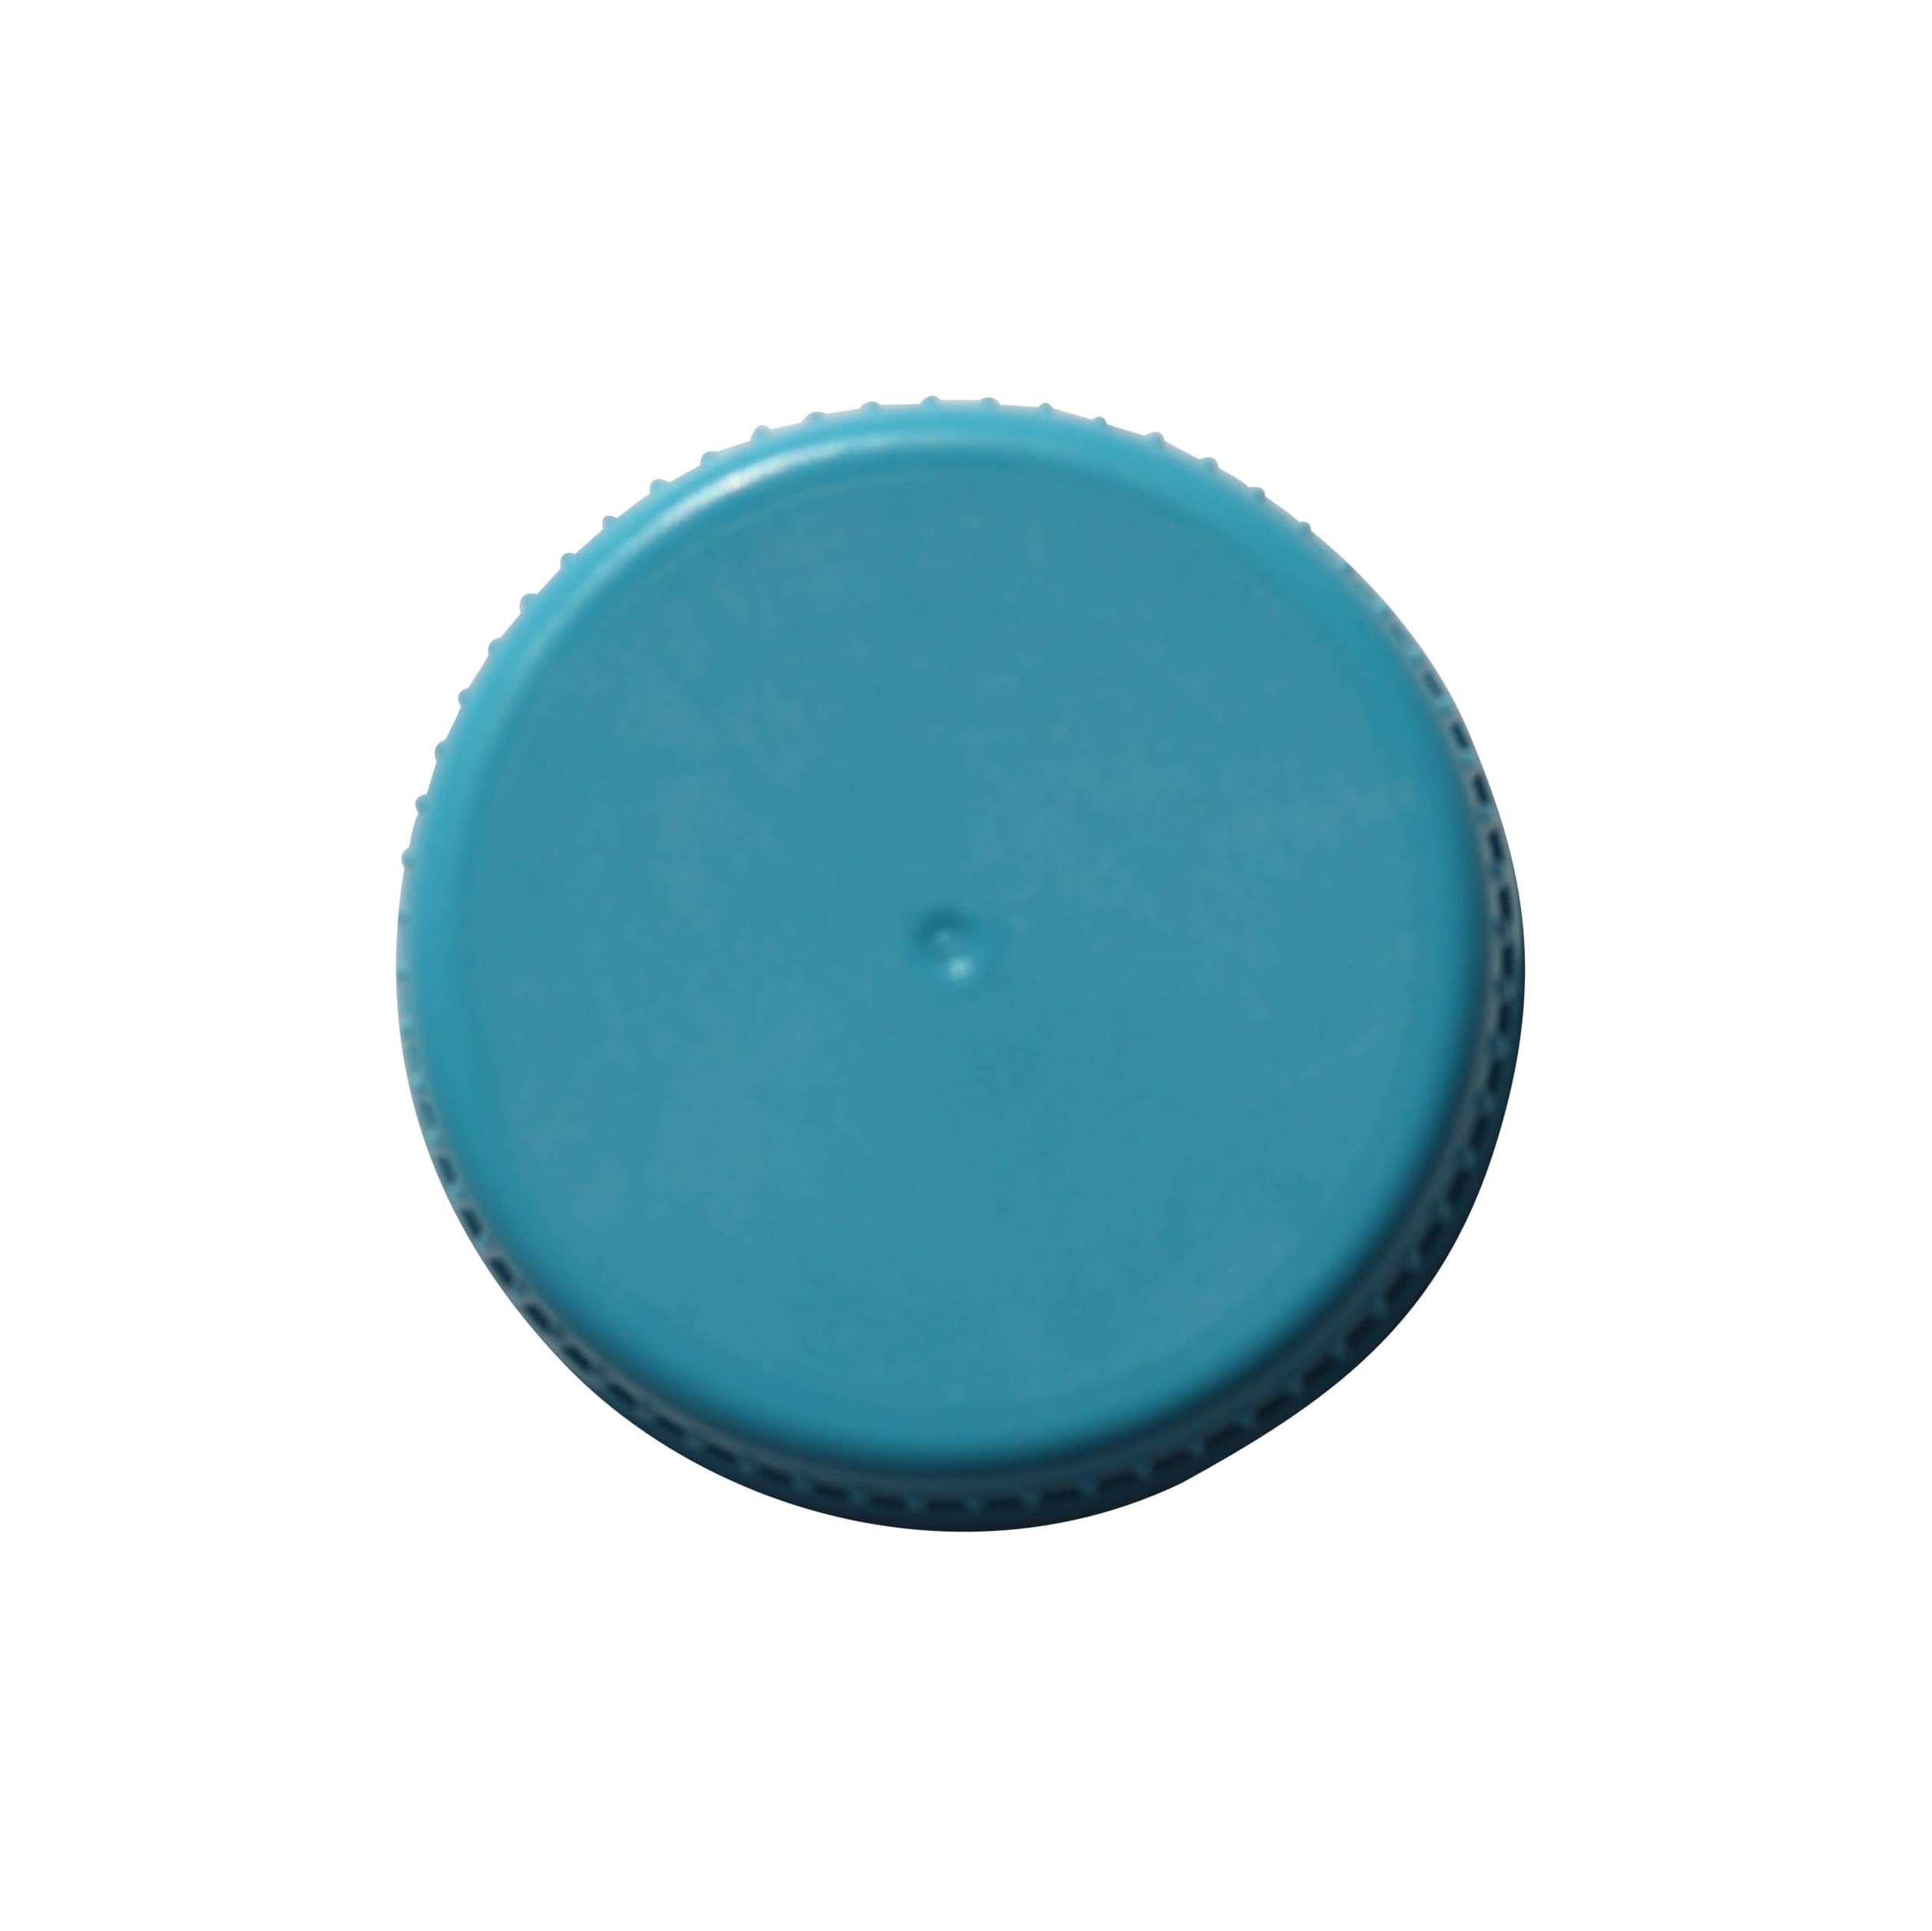 Zakrętka 40 mm, tworzywo sztuczne PE, kolor jasnoniebieski